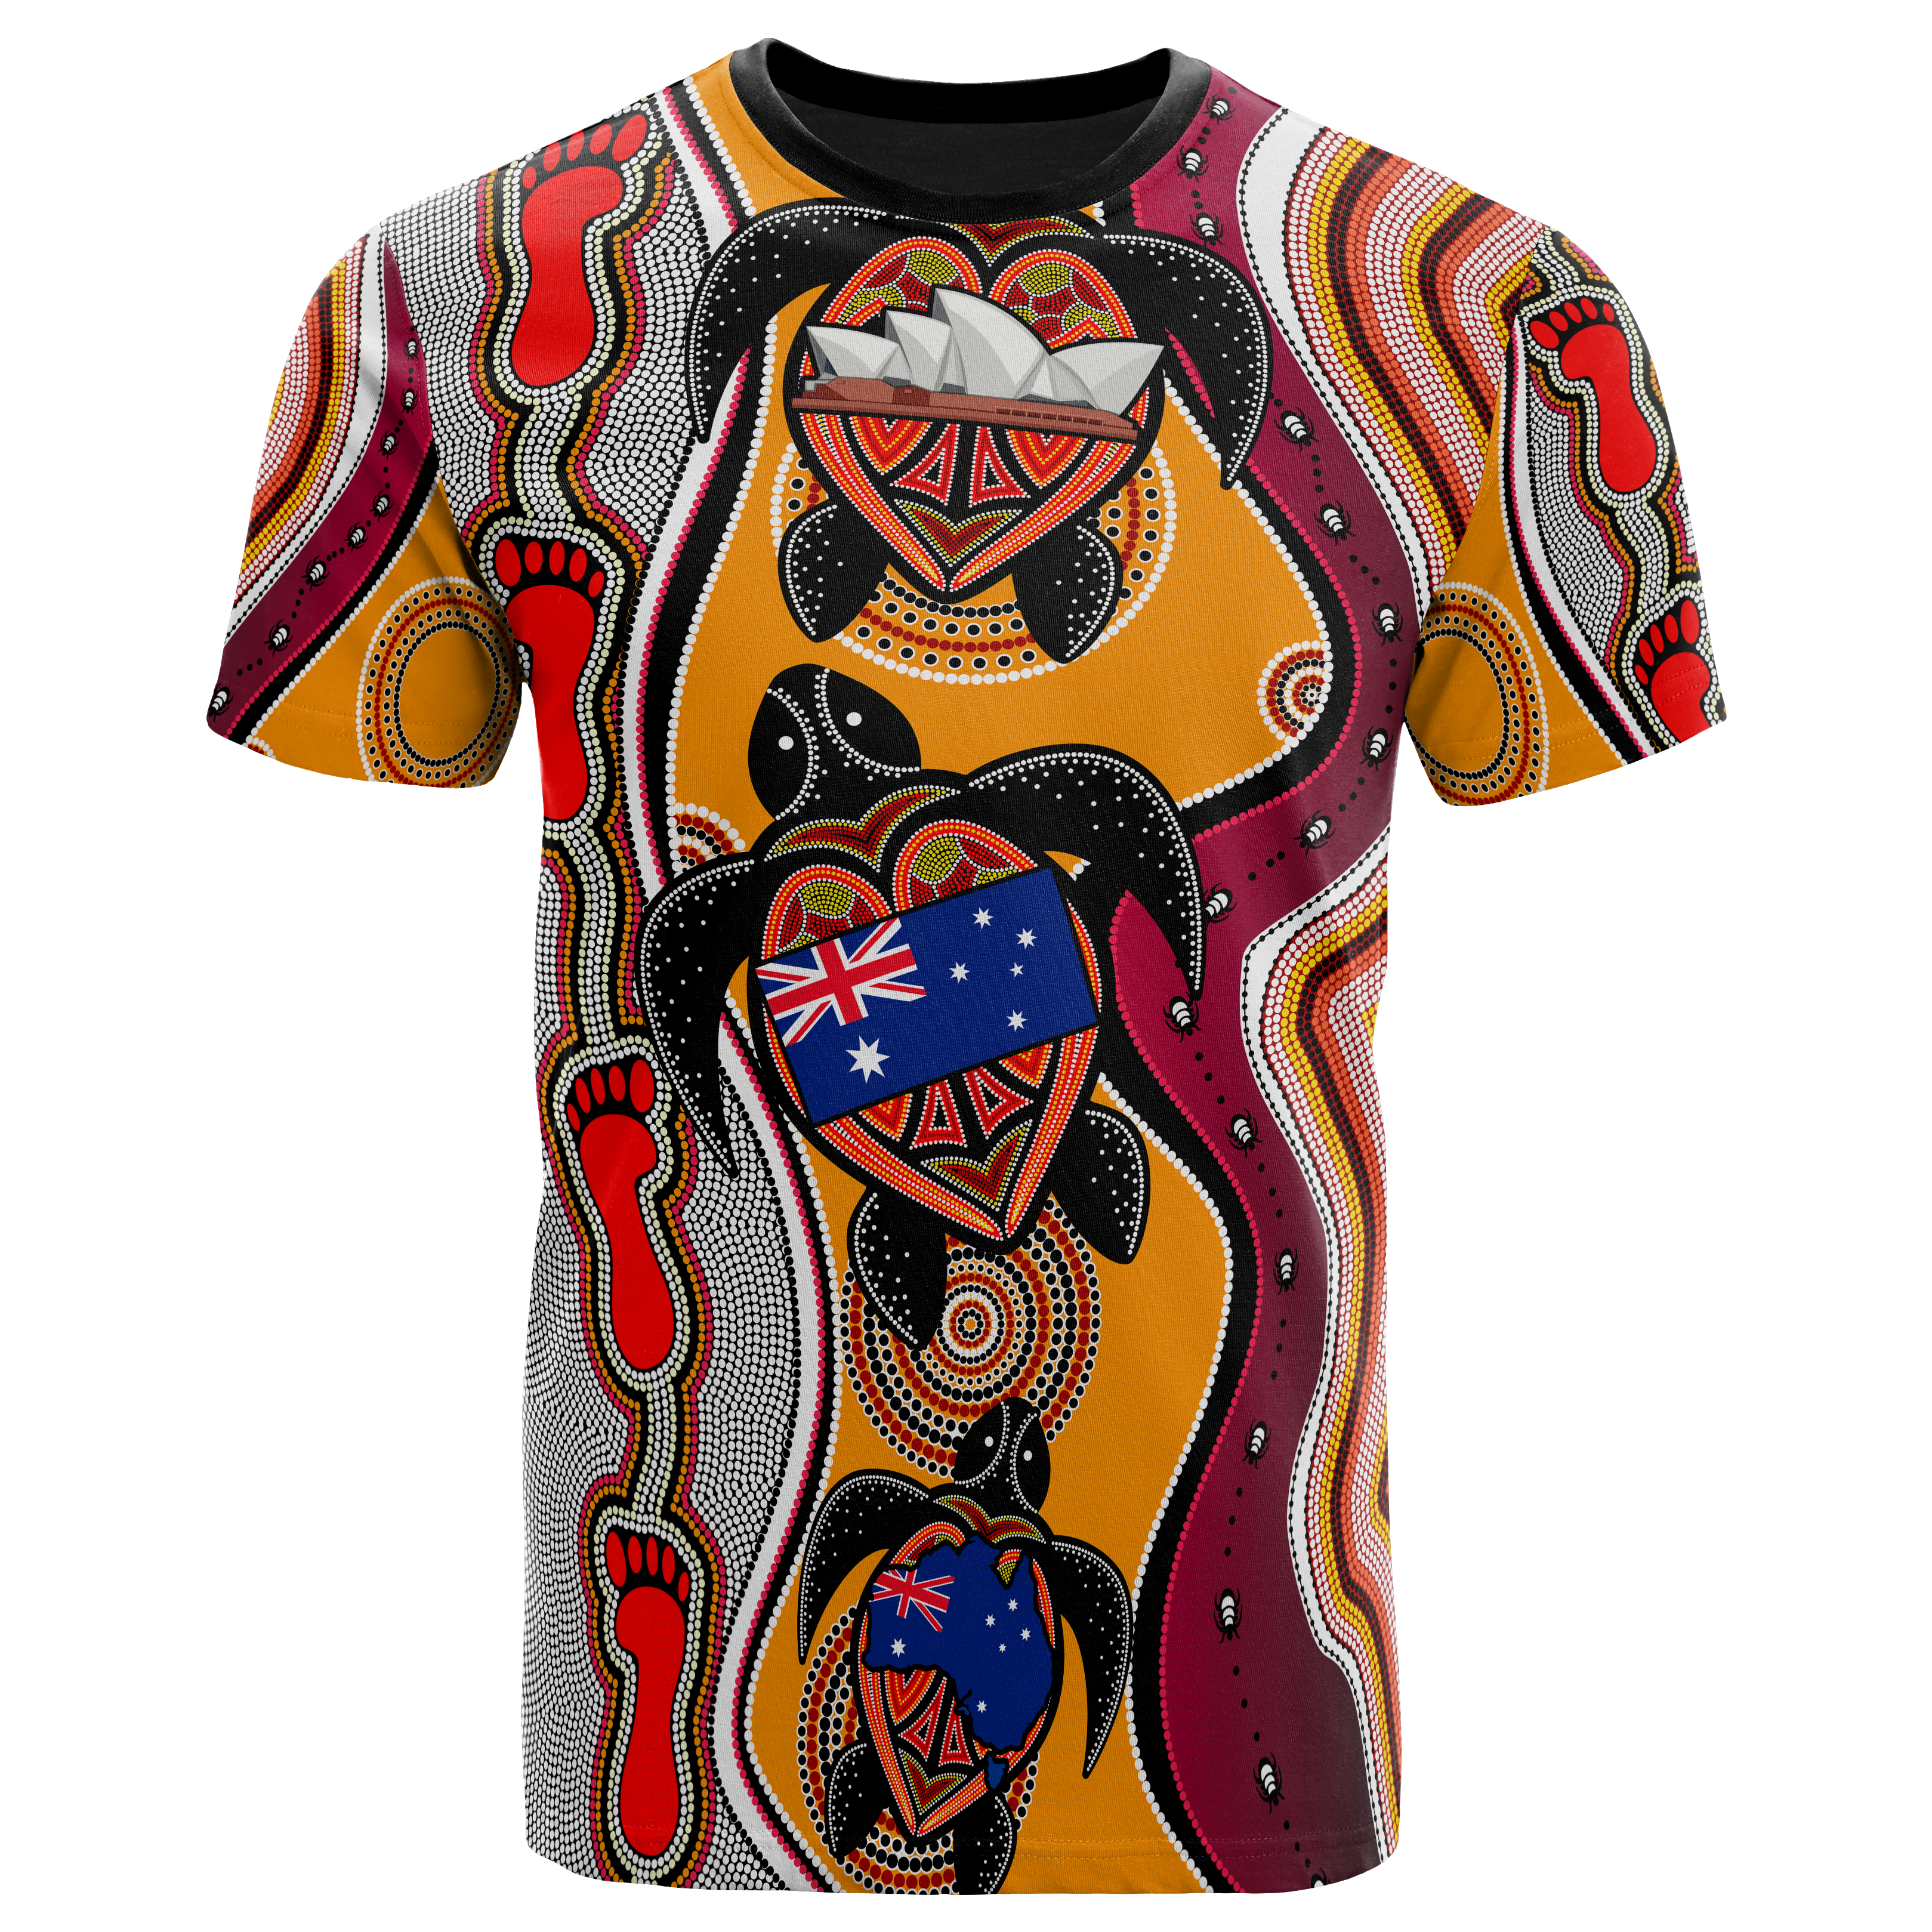 aboriginal-t-shirt-turtle-patterns-aus-flag-opera-sydney